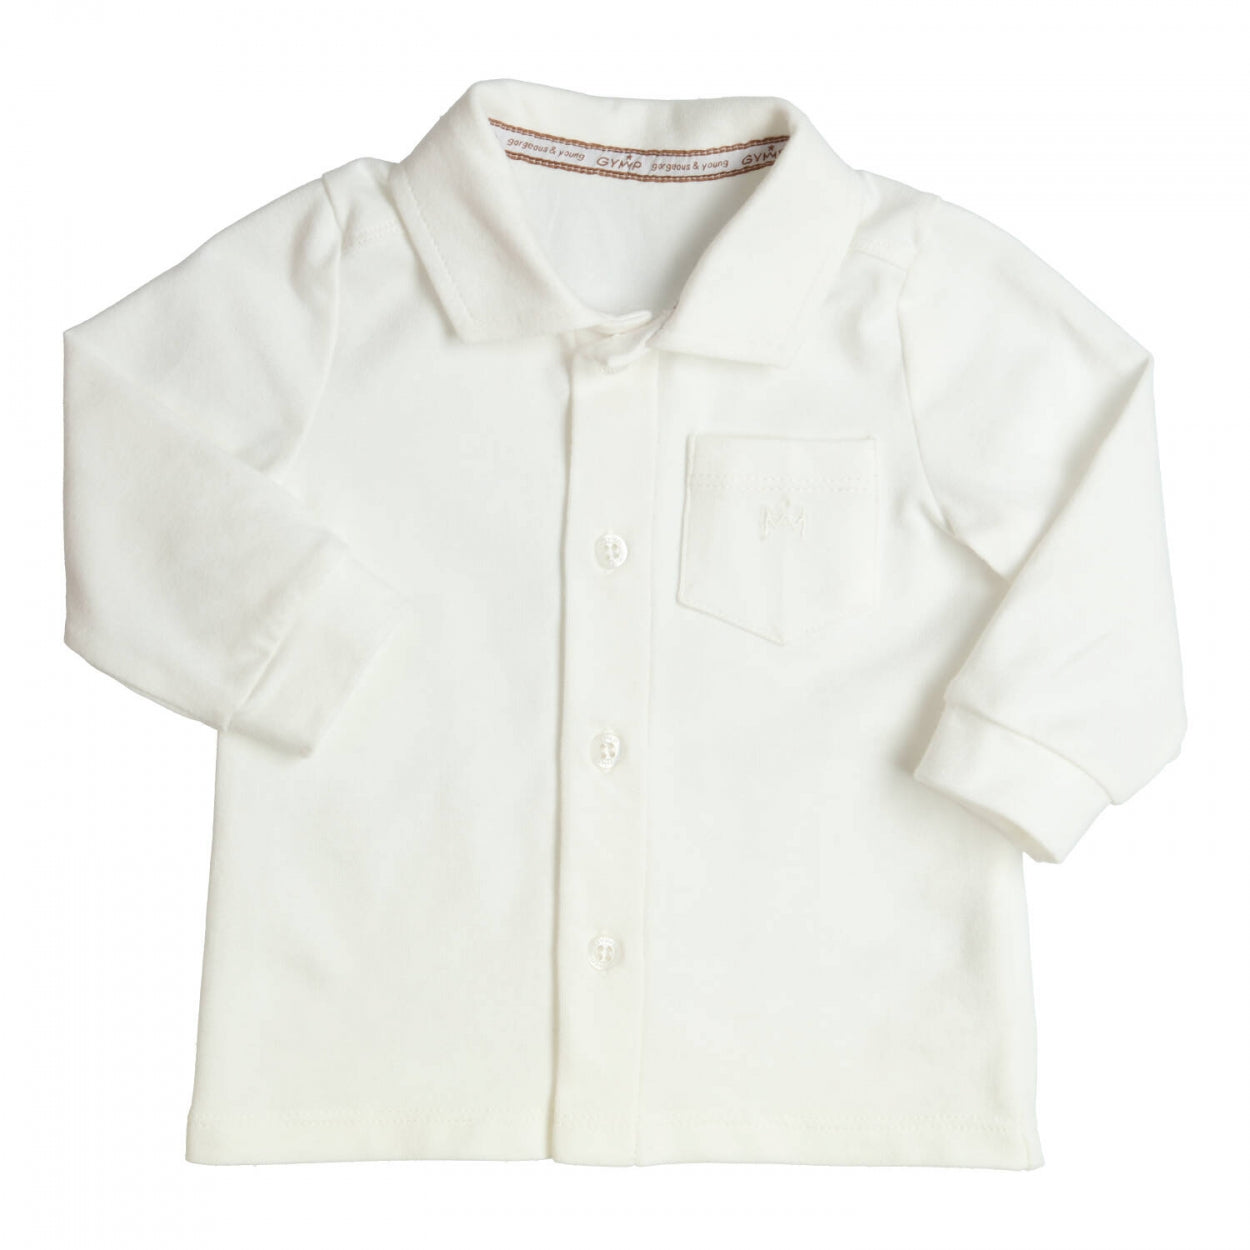 Jongens Shirt Aerodoux van Gymp in de kleur Off White in maat 86.